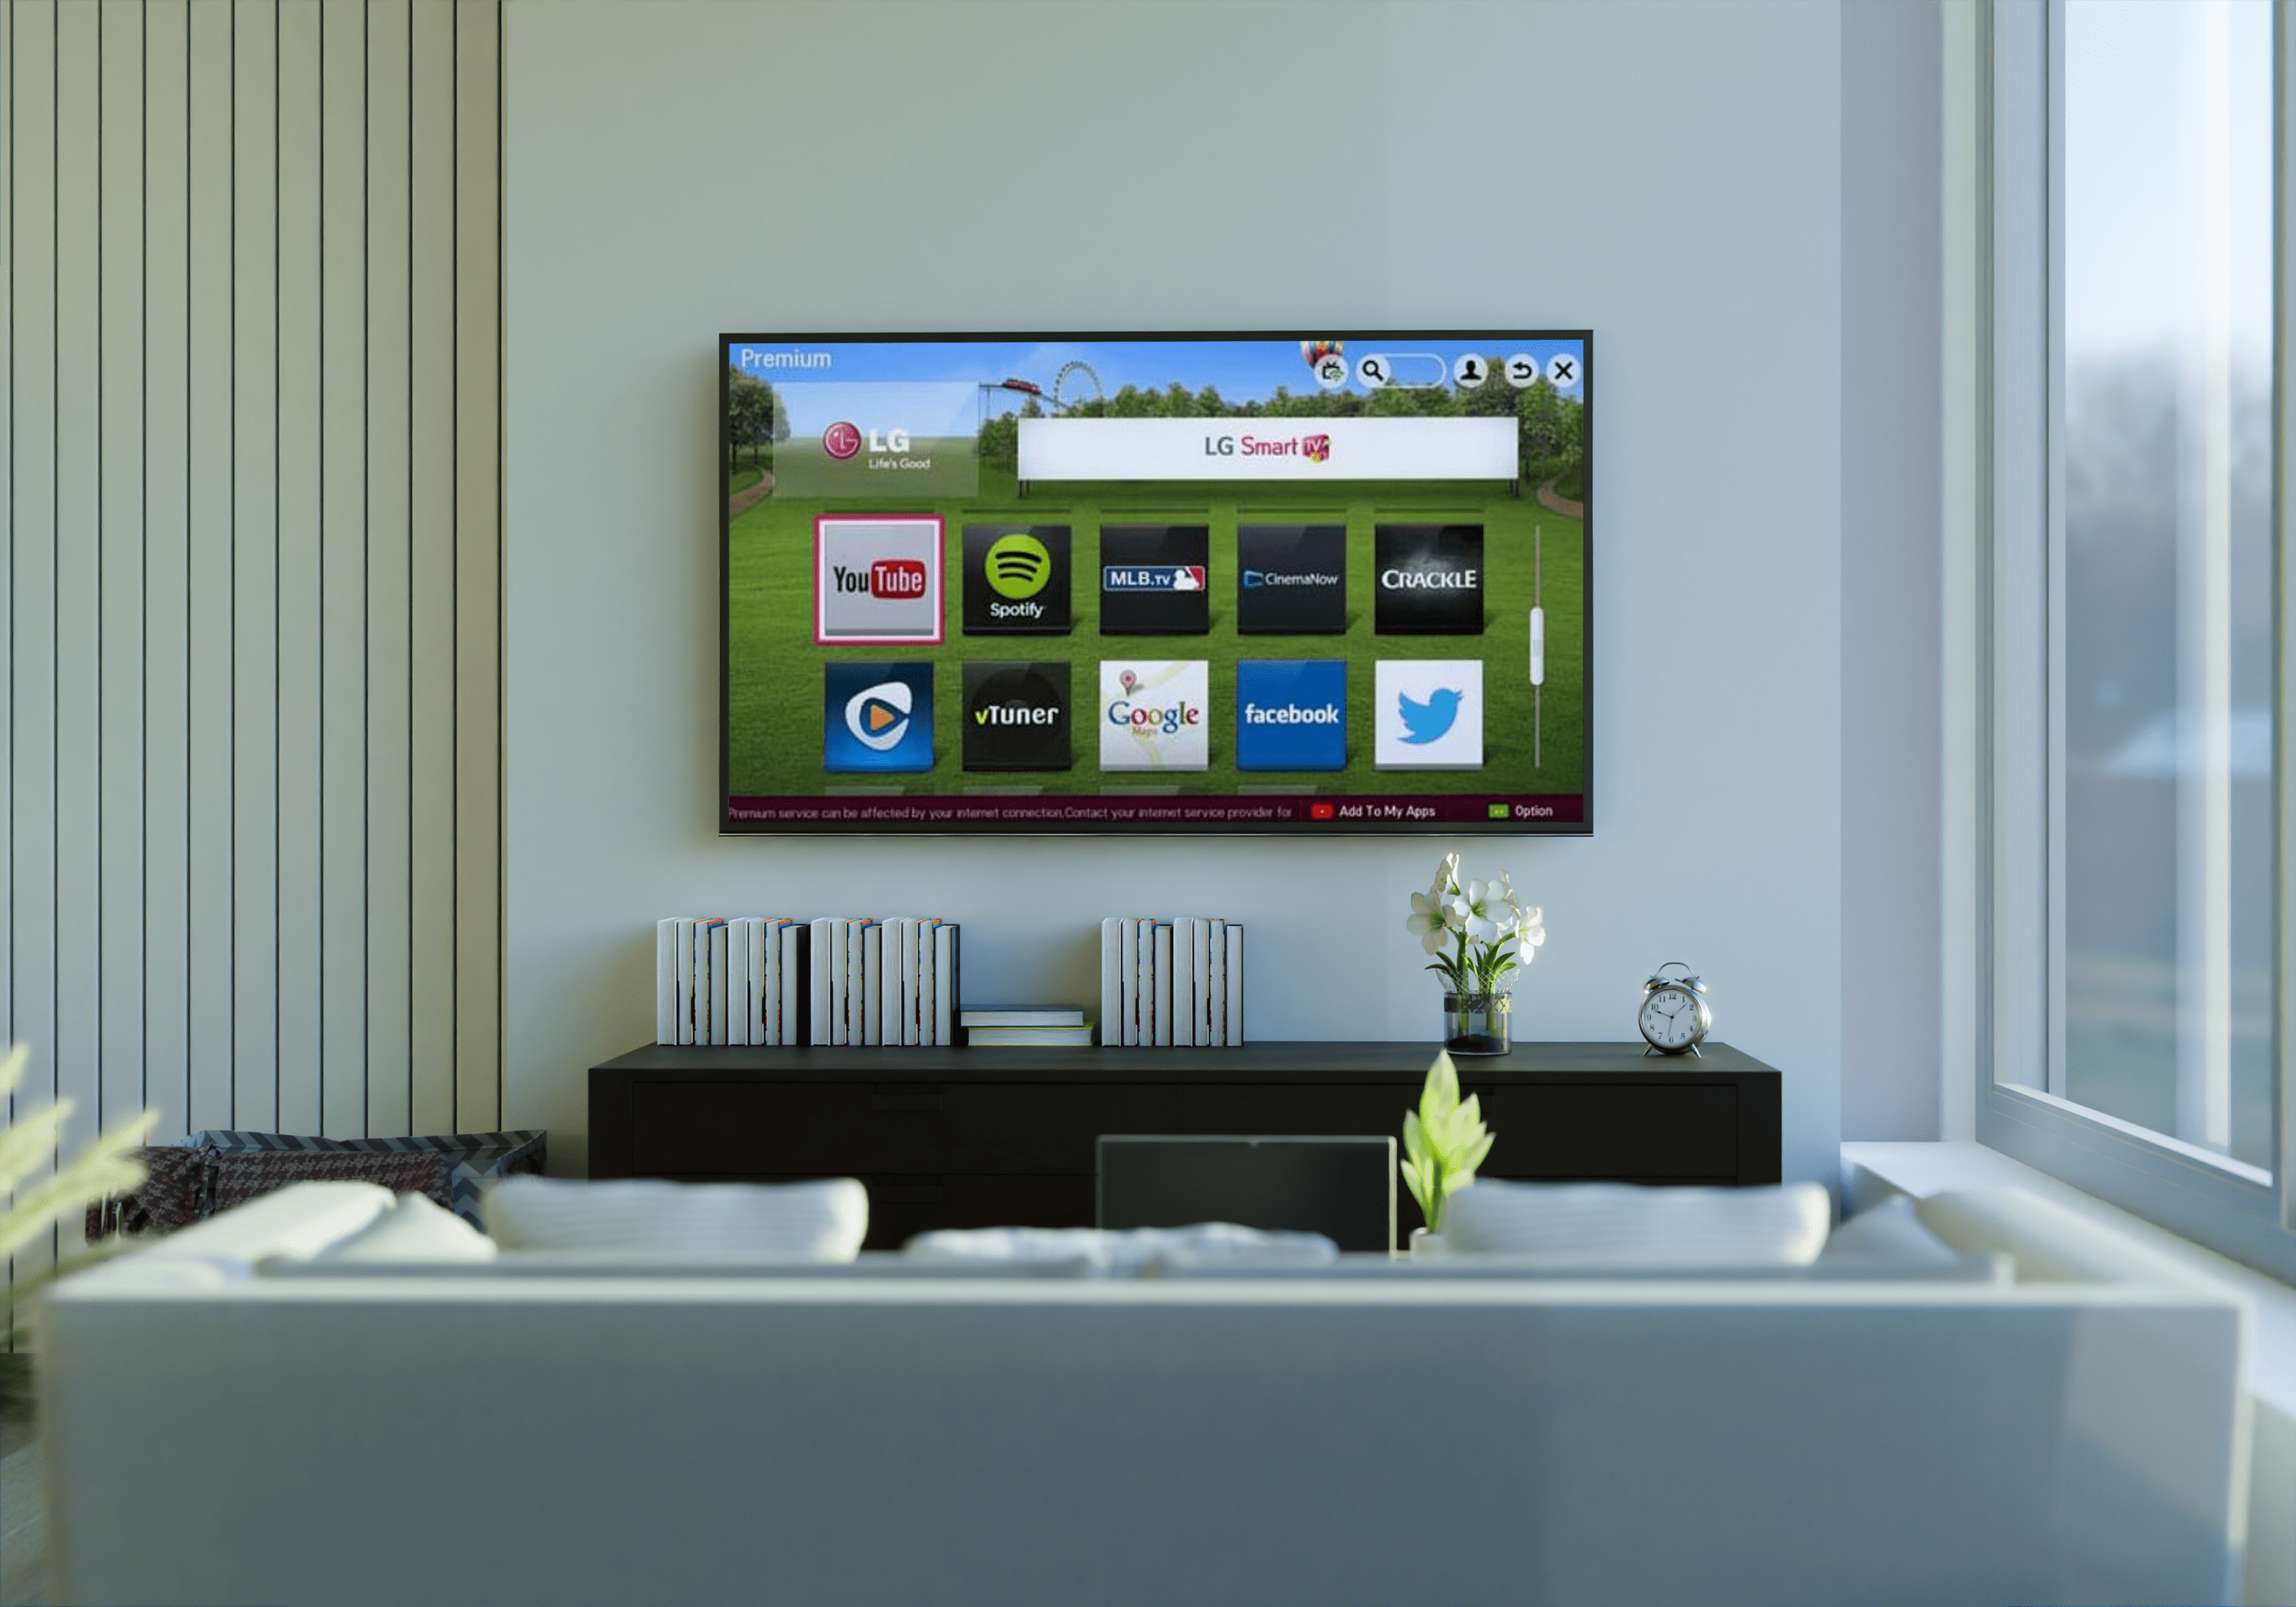 LG TV'ye Uygulamalar veya Kanallar Nasıl Eklenir